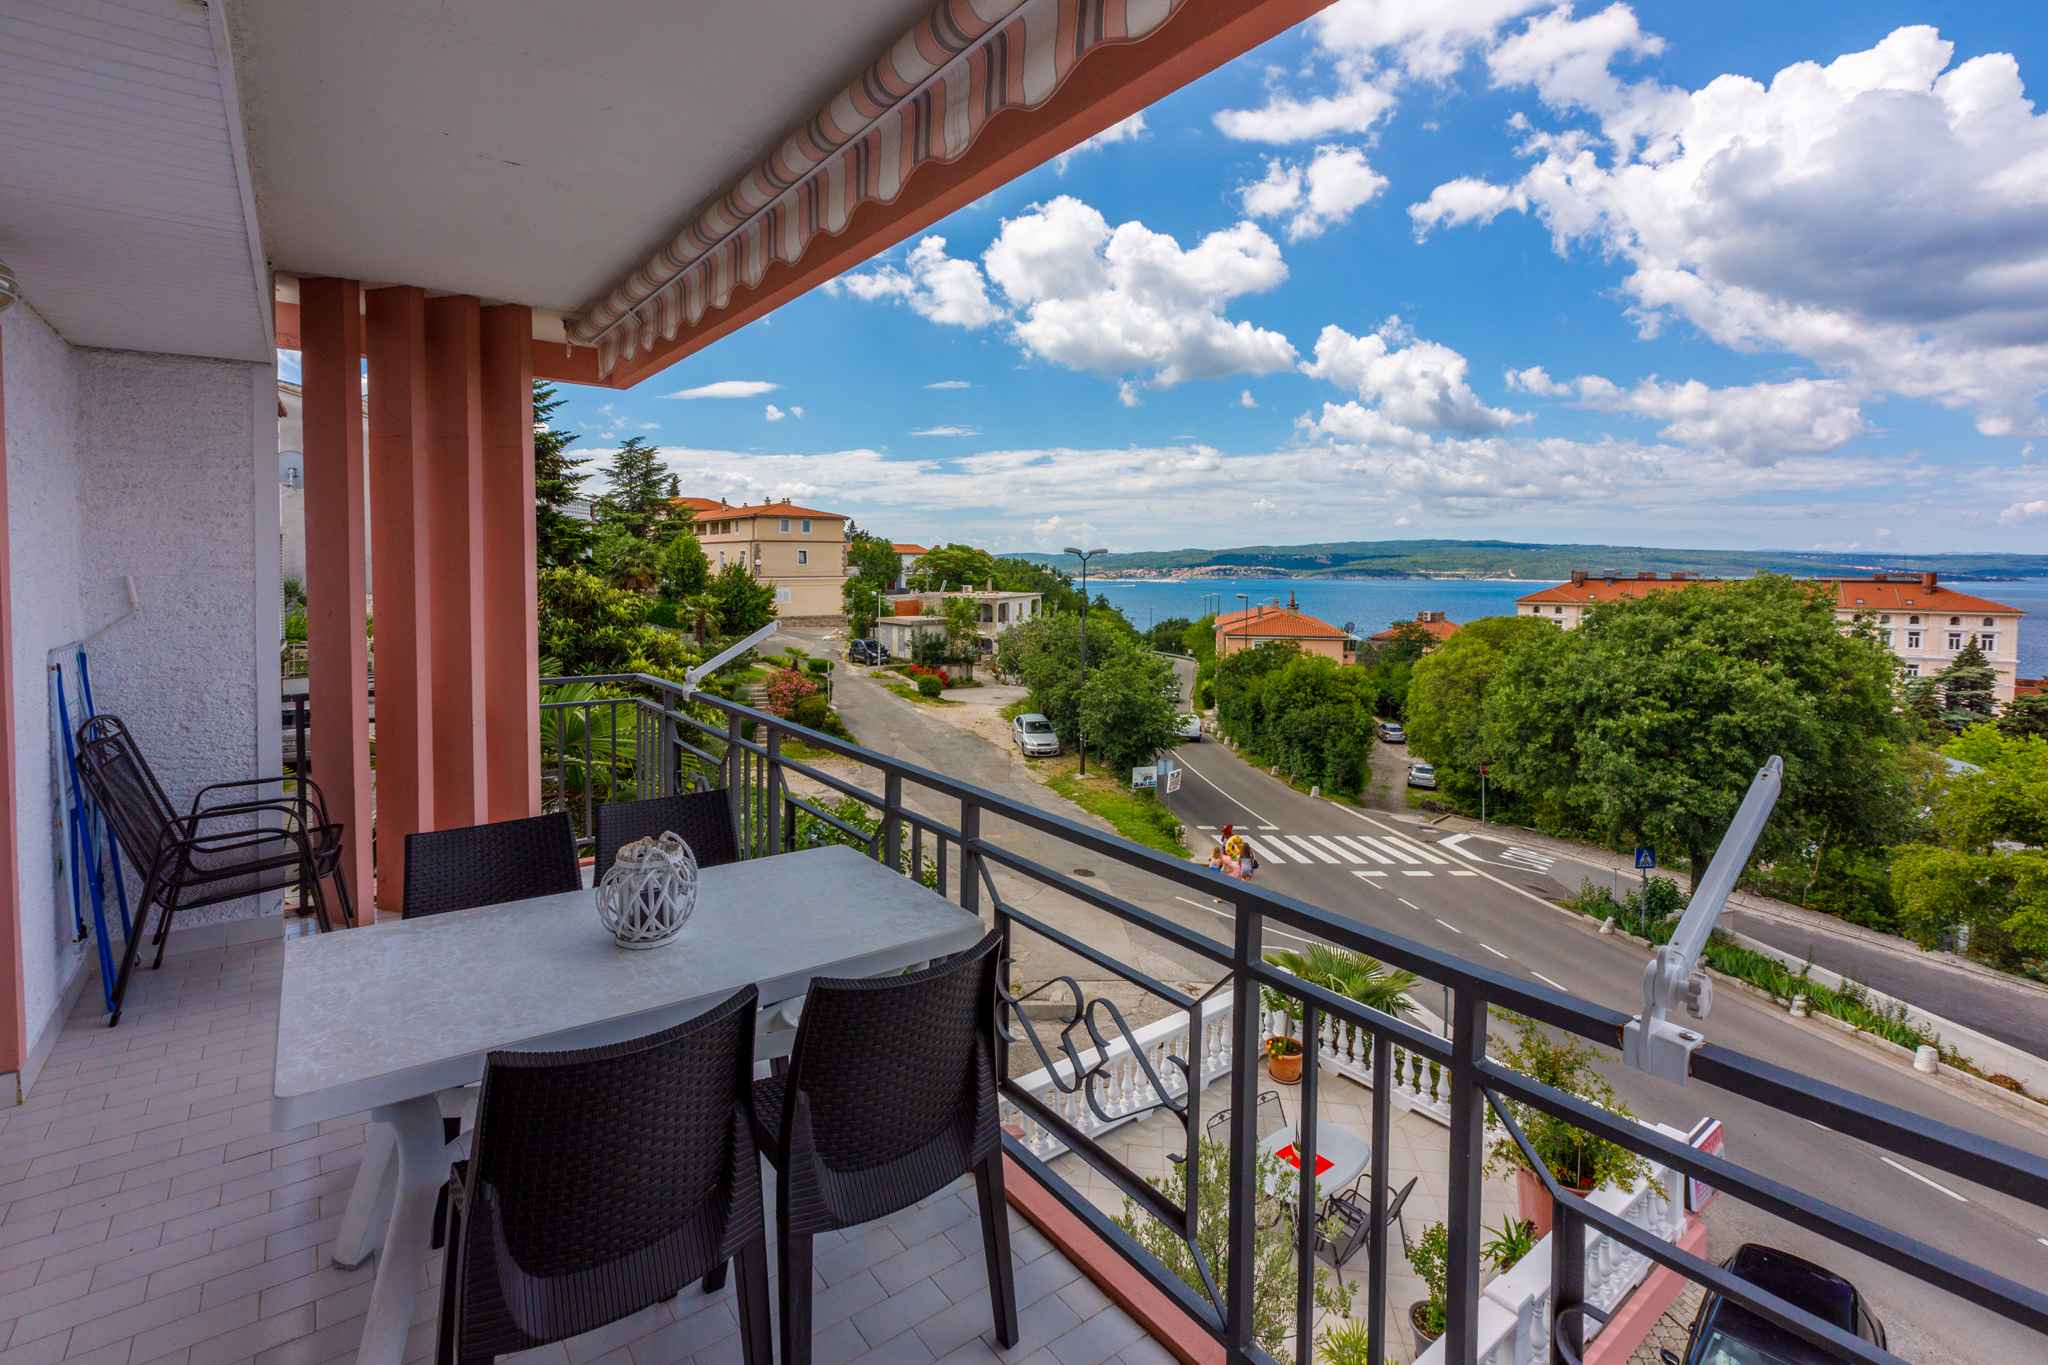 Ferienwohnung mit Balkon und Meersicht (281406), Crikvenica, , Kvarner, Kroatien, Bild 1